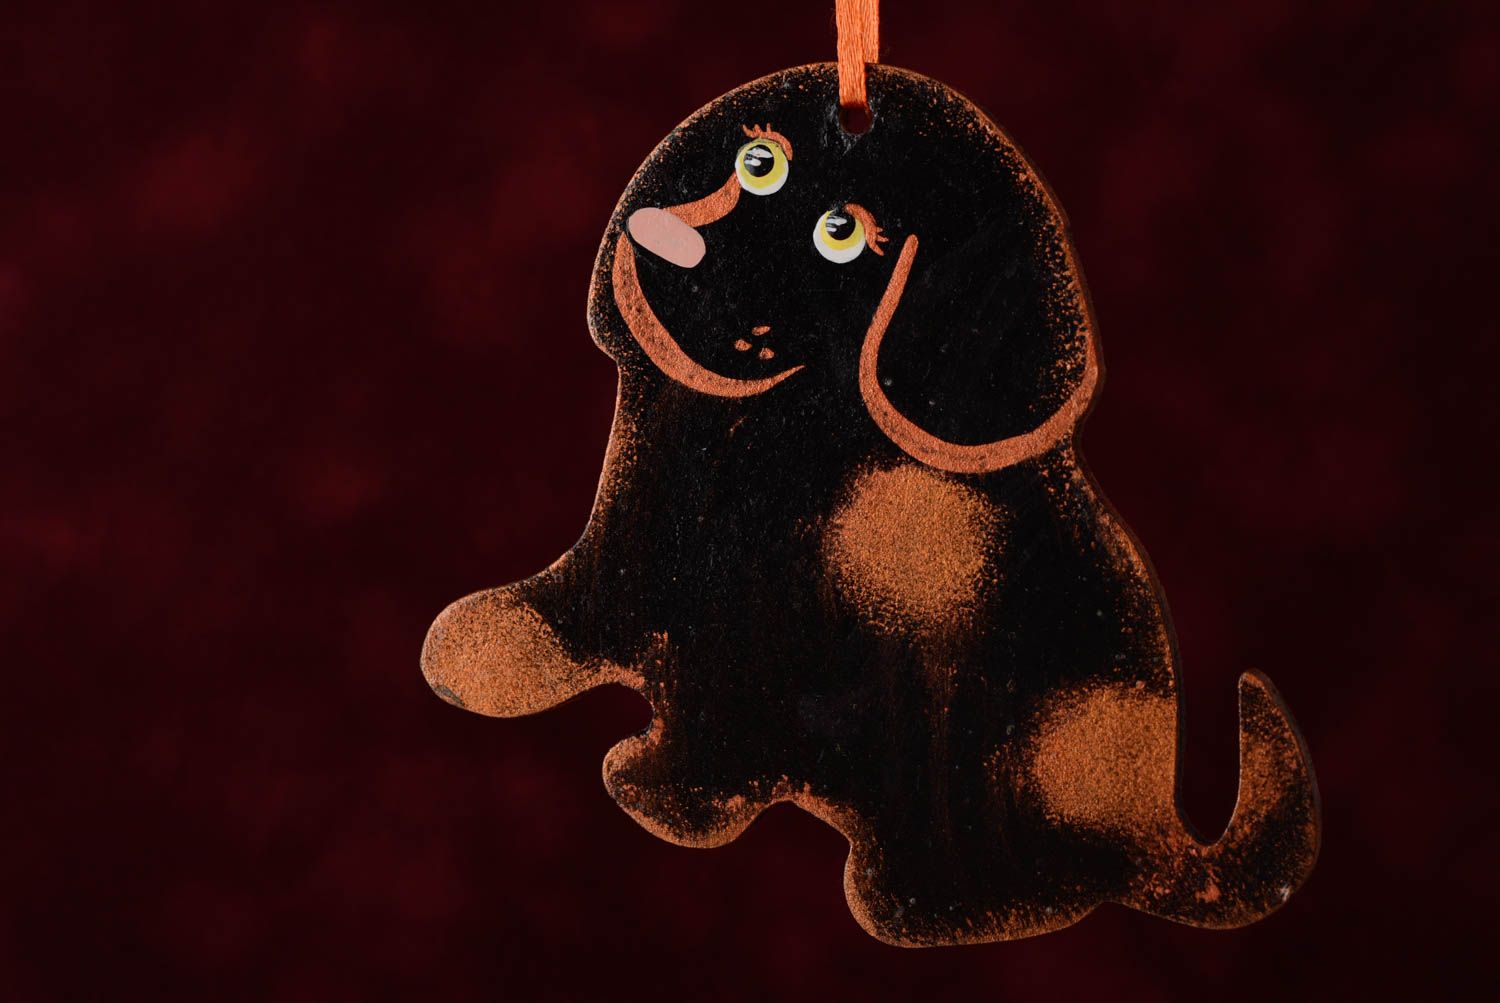 Интерьерная подвеска из ДВП расписанная акриловыми красками в виде шоколадного пса  фото 4